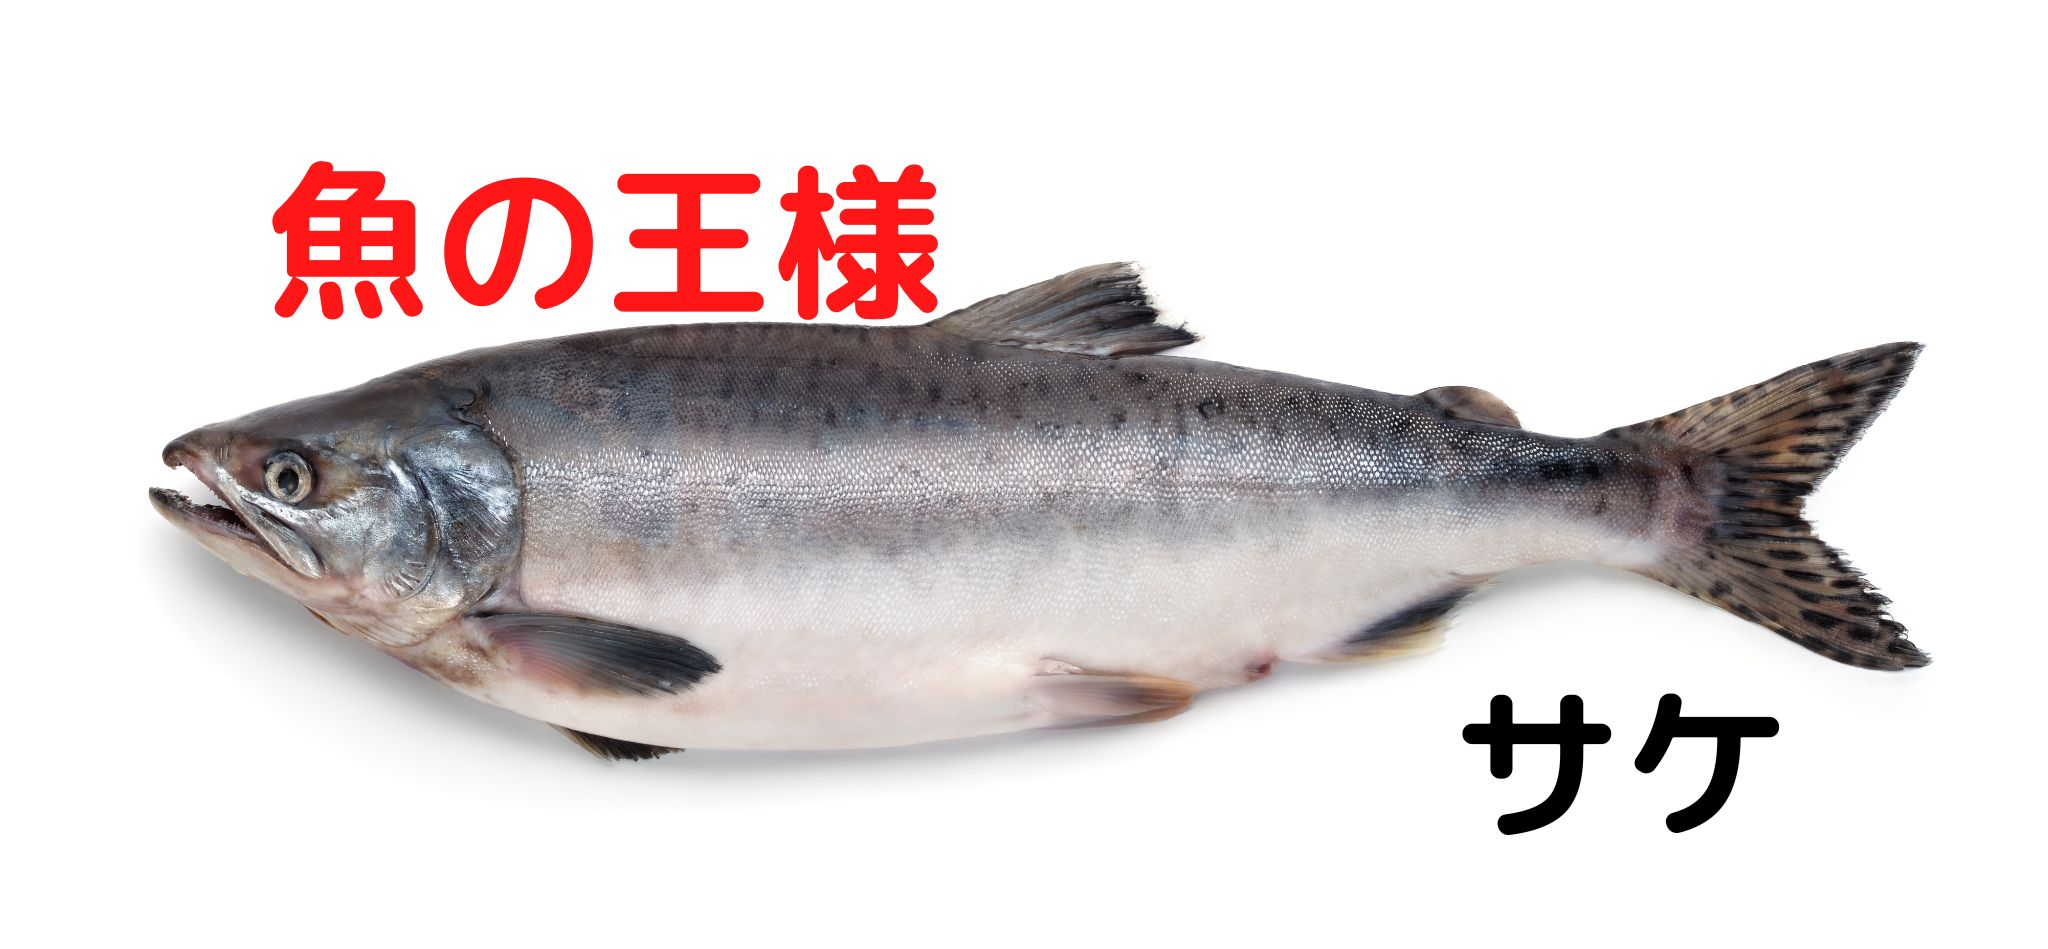 北海道を代表する魚サケ。でも絶対に〇〇食べちゃダメ！   食べ